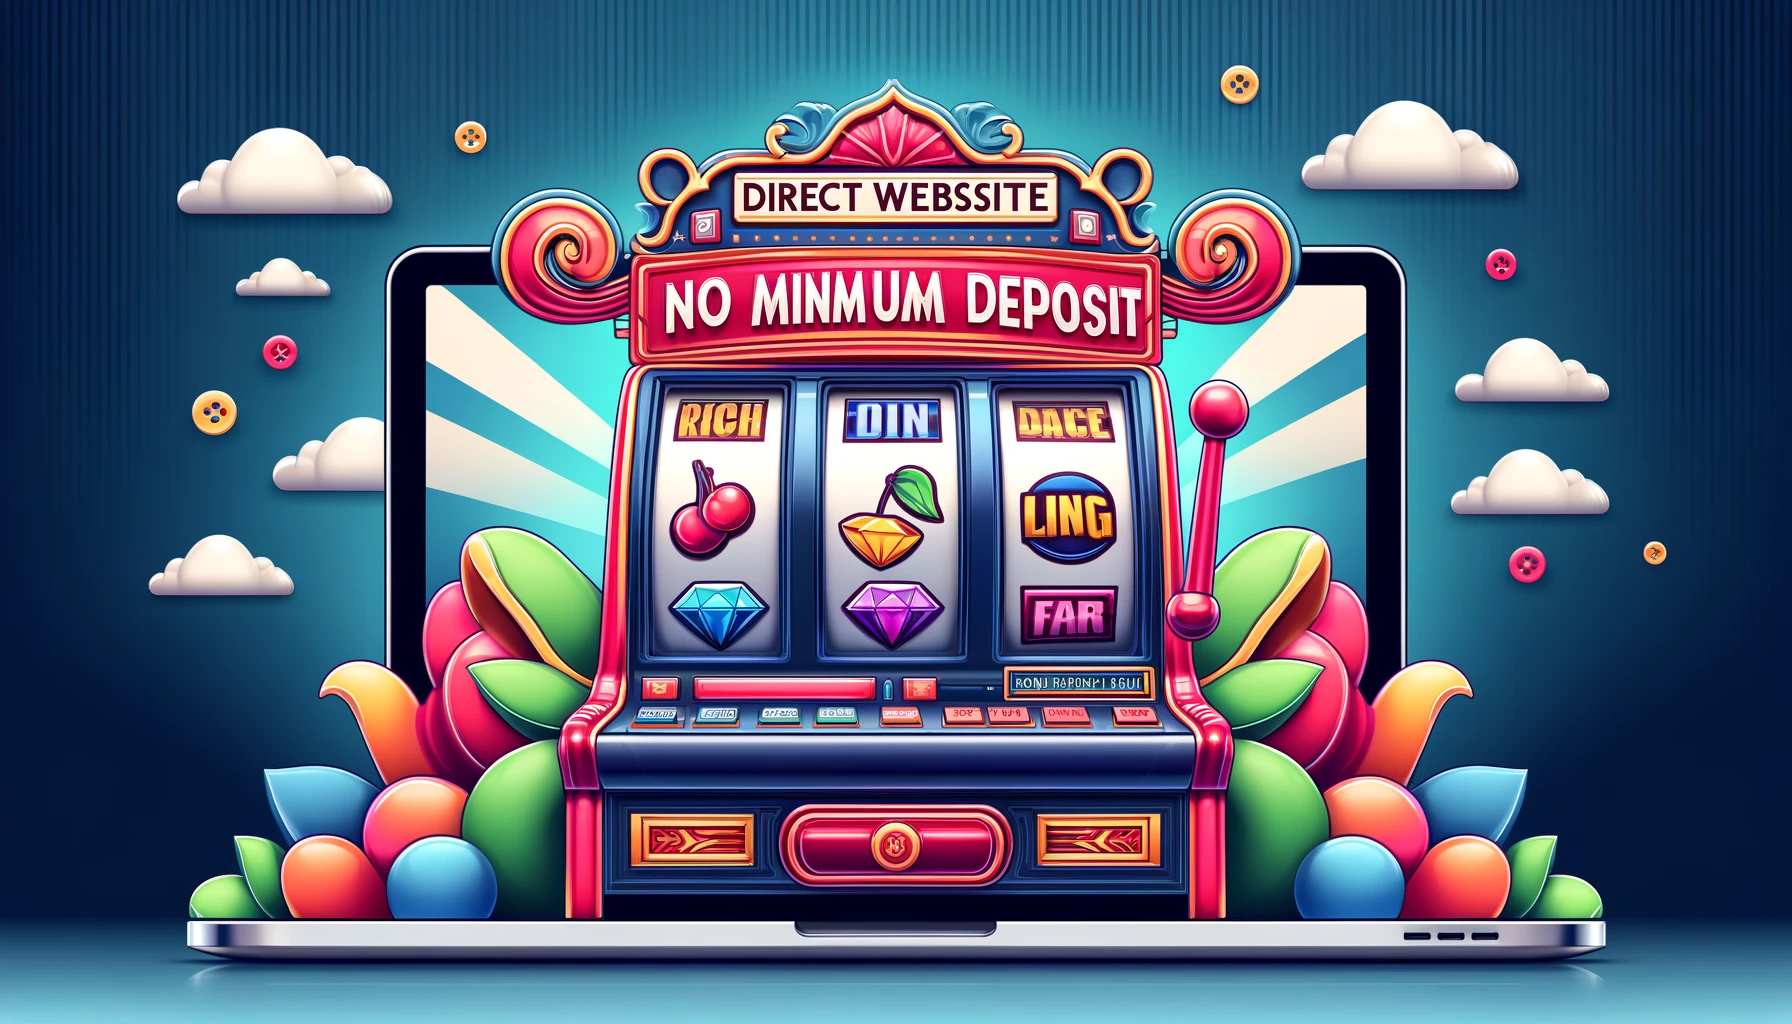 Direct website, no minimum deposit